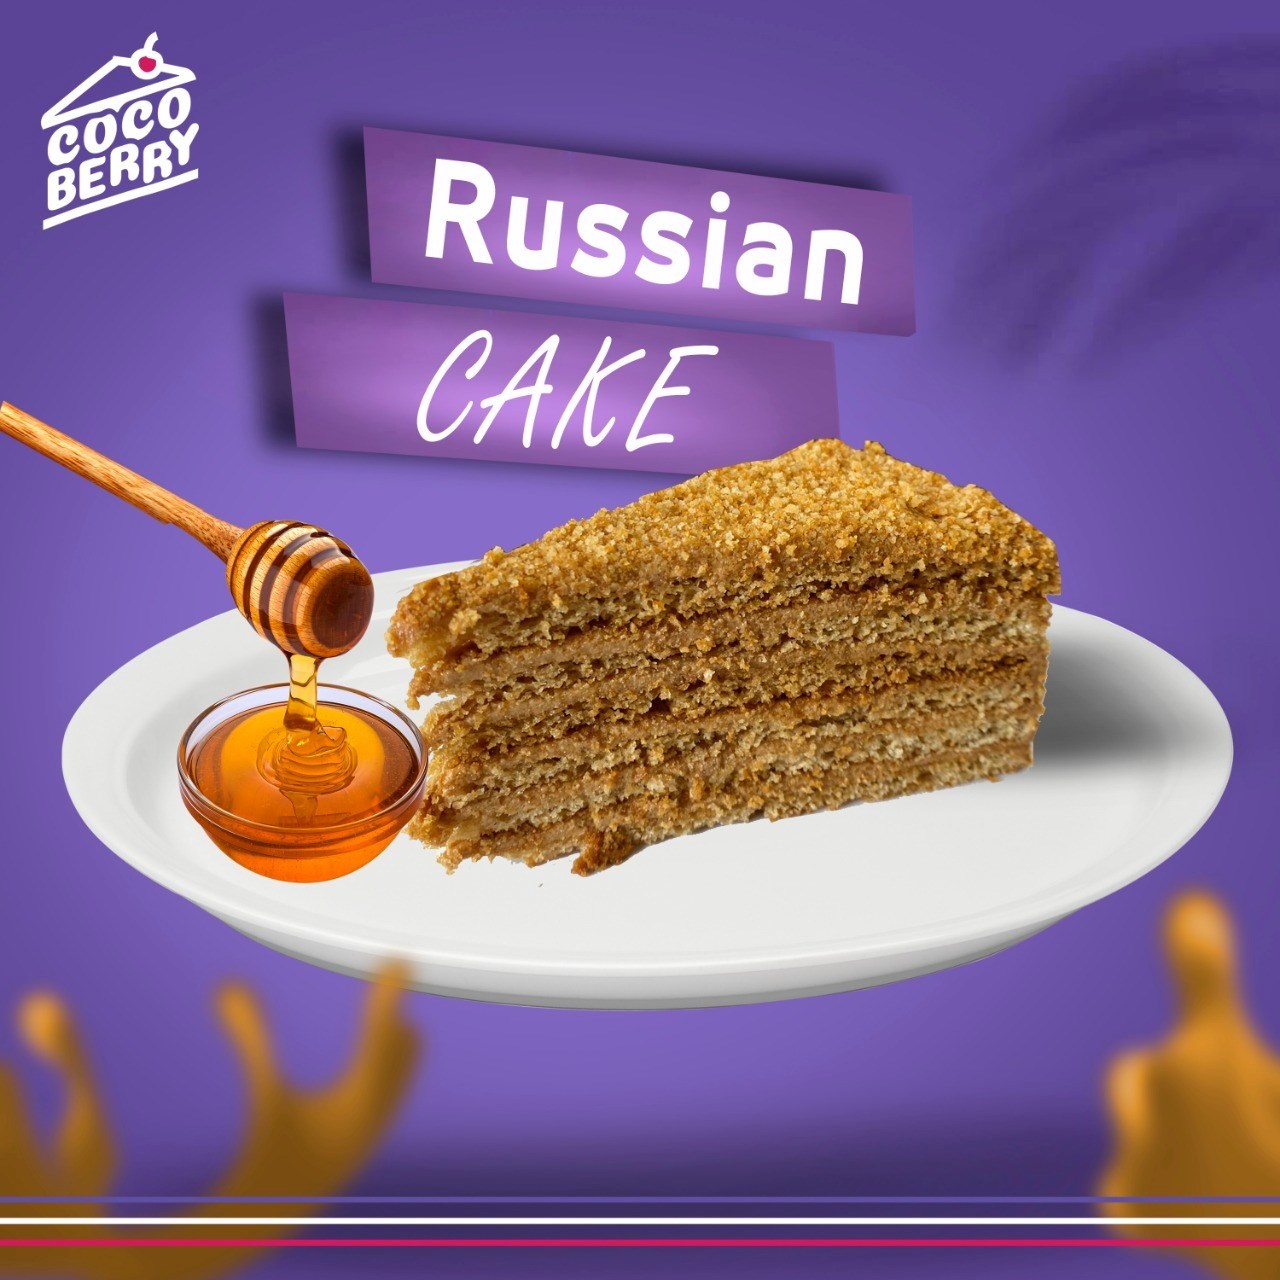 صورة المنتج الكيكة الروسية